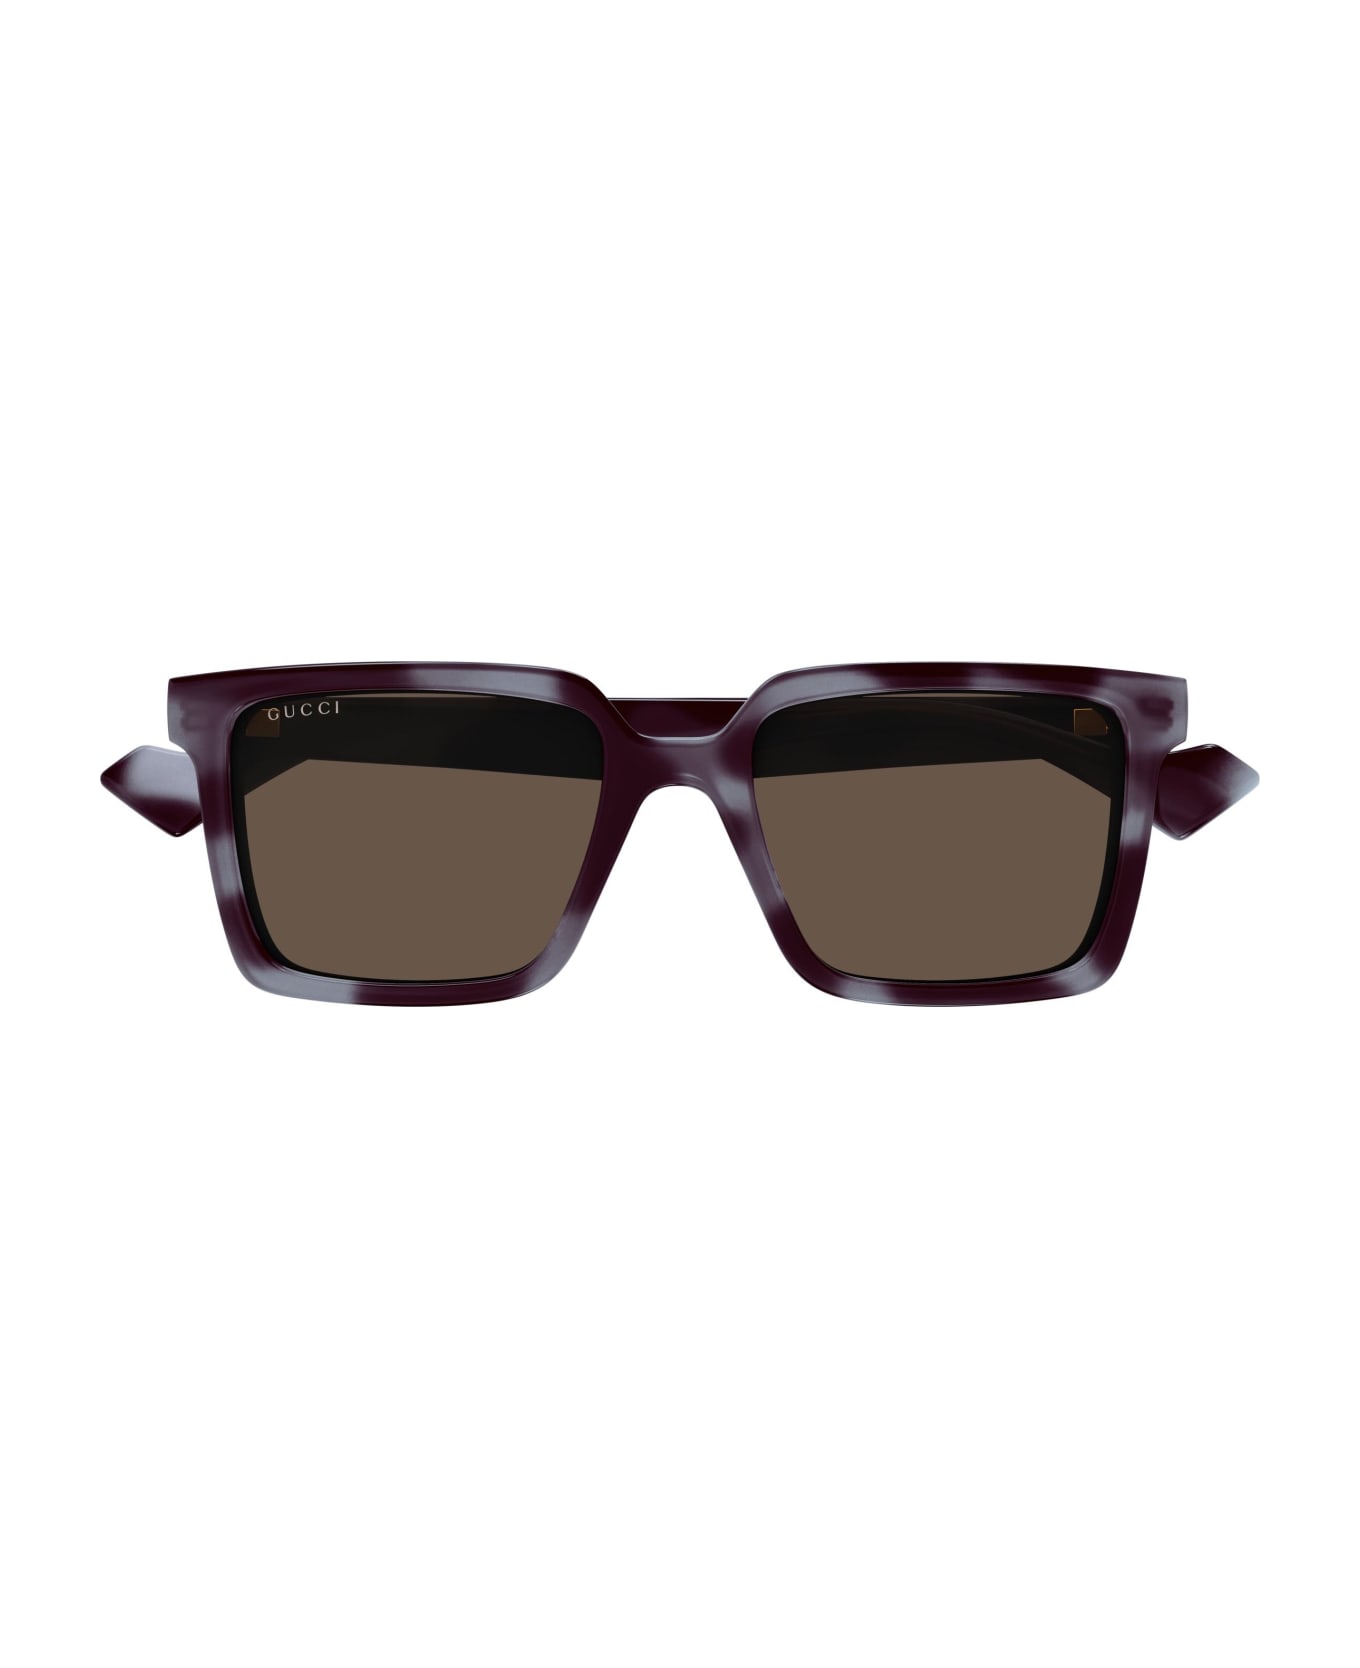 Gucci Eyewear Sunglasses - Grigio/Marrone サングラス